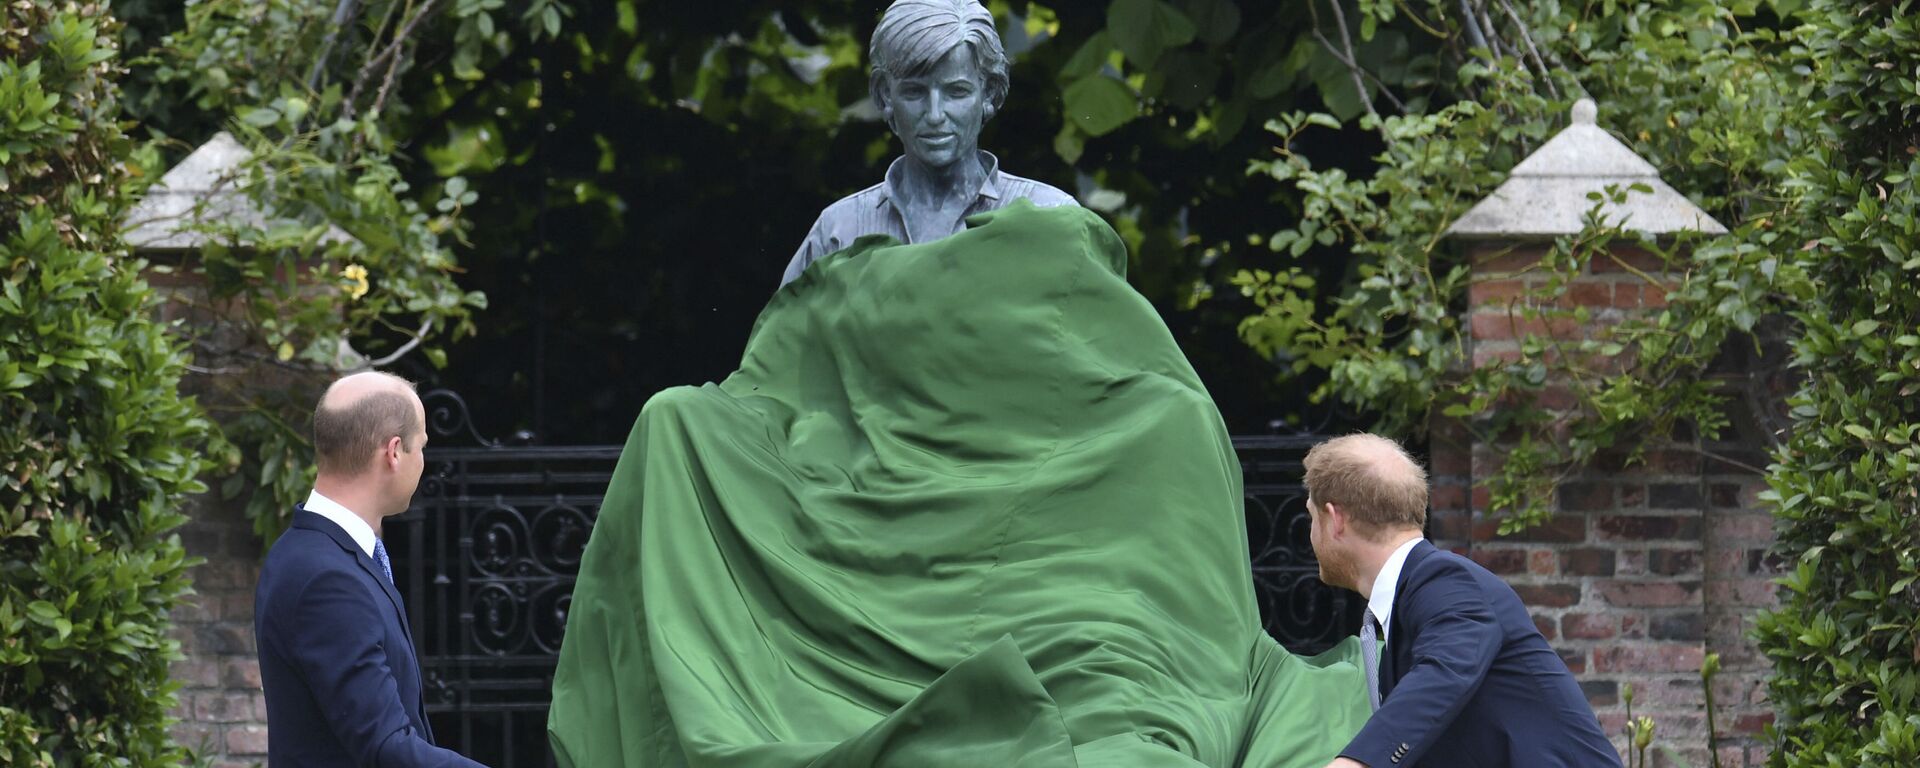 الأميران البريطانيان هاري وويليام يقفان أمام تمثال أمهما الراحلة الأميرة ديانا، بعد إزاحة الستار عنه حديقة سانكن بقصر كنسينغتون في لندن، إنجلترا 1 يوليو 2021 - سبوتنيك عربي, 1920, 23.04.2022